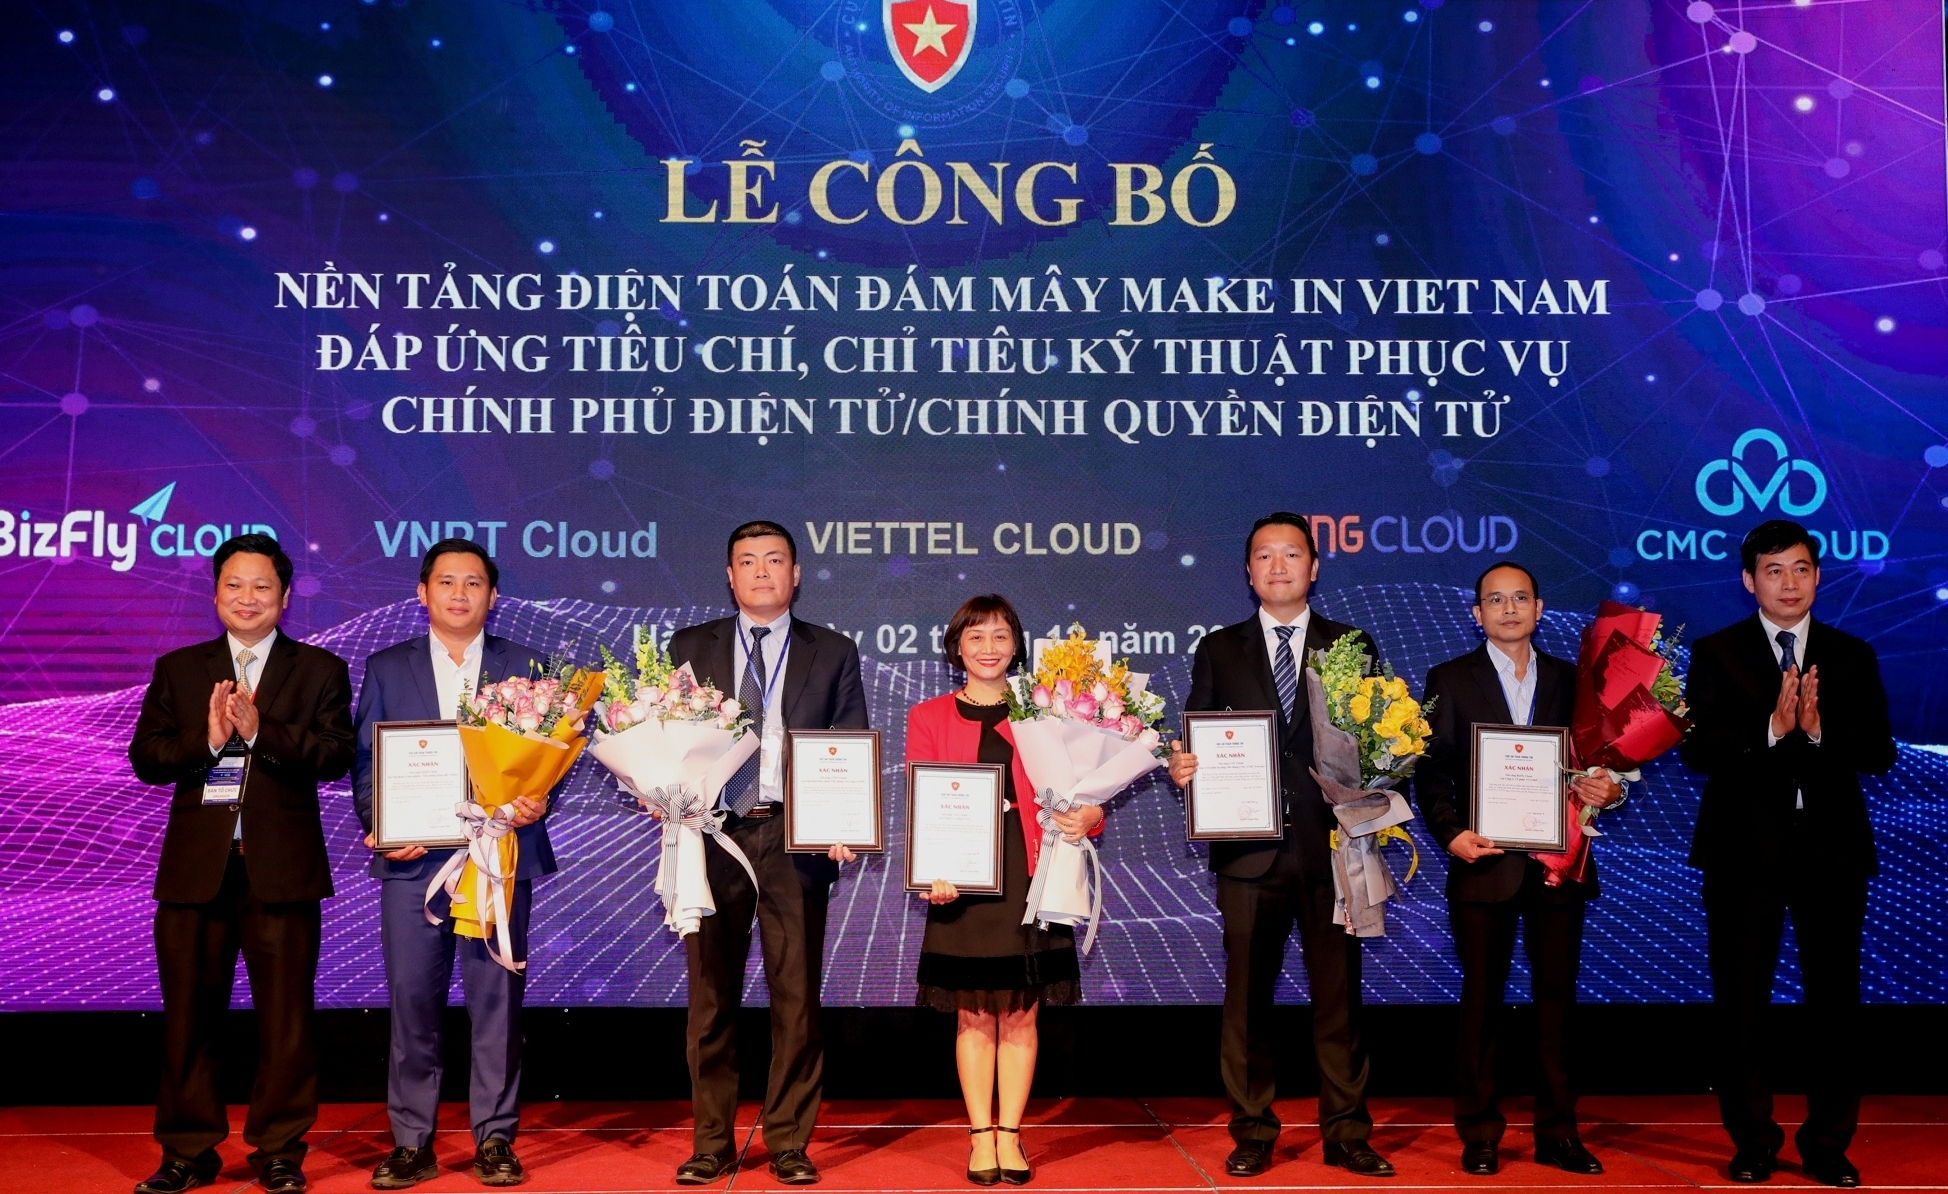 Công bố 5 nền tảng điện toán đám mây "Make in Việt Nam"